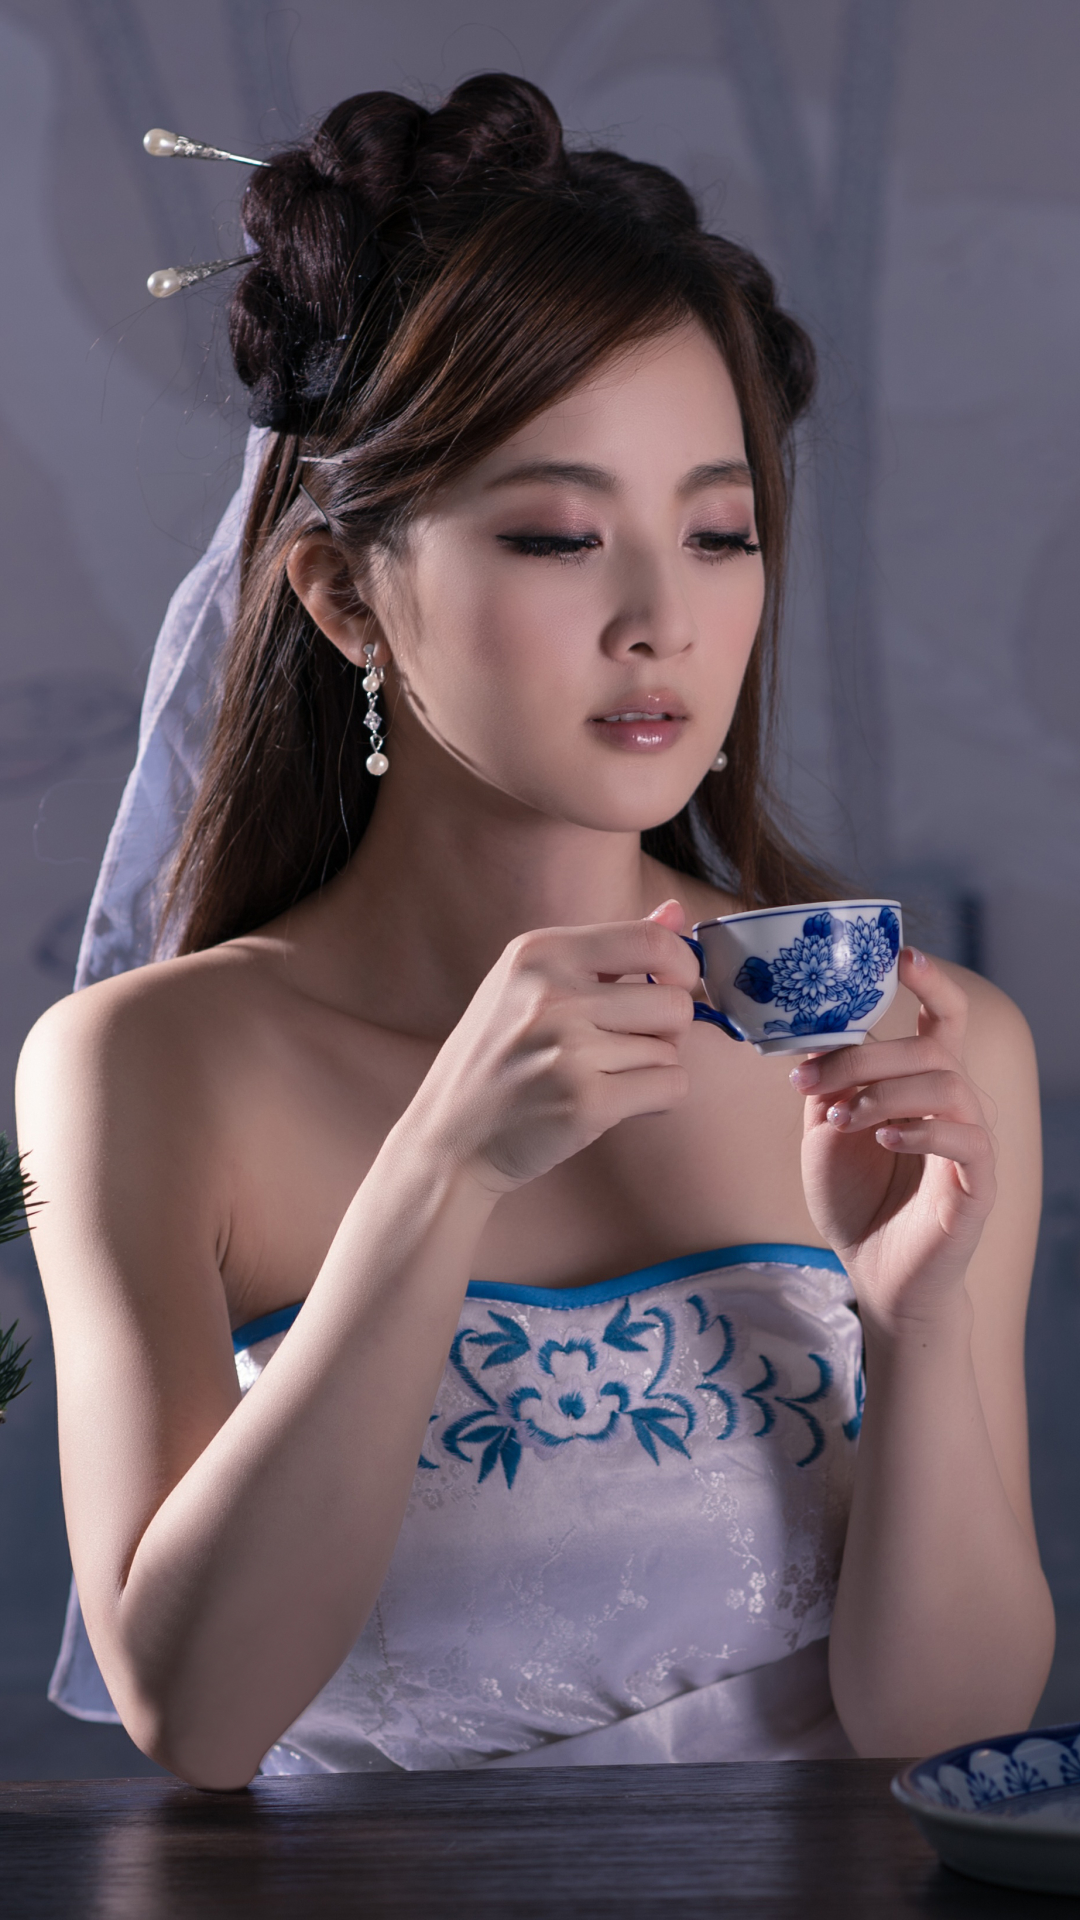 women, mikako zhang kaijie, asian, dress, cup, hair dress, tea set, hairpin, bonsai HD wallpaper